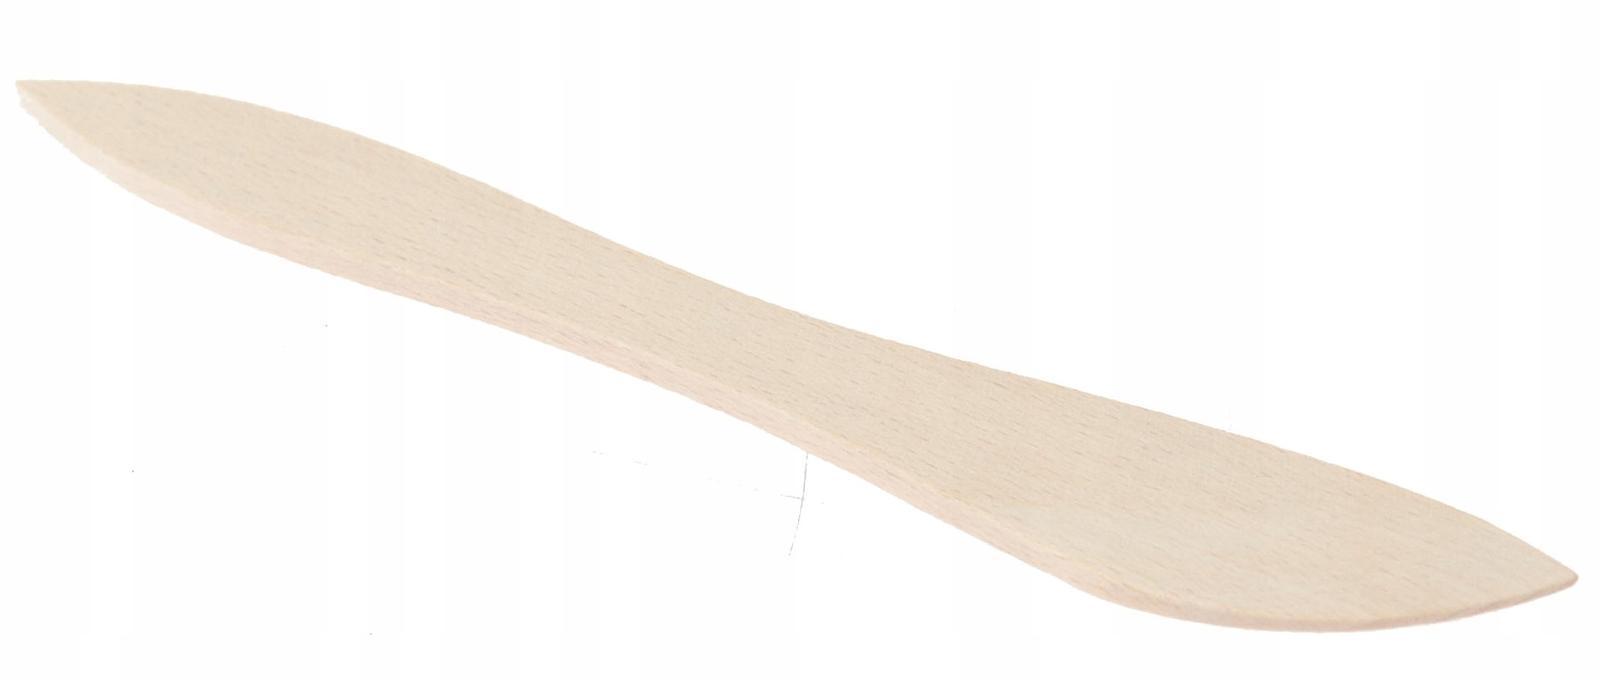 Drewniany nóż 18 cm do smarowania masła powideł nożyk buk naturalny 0 Full Screen